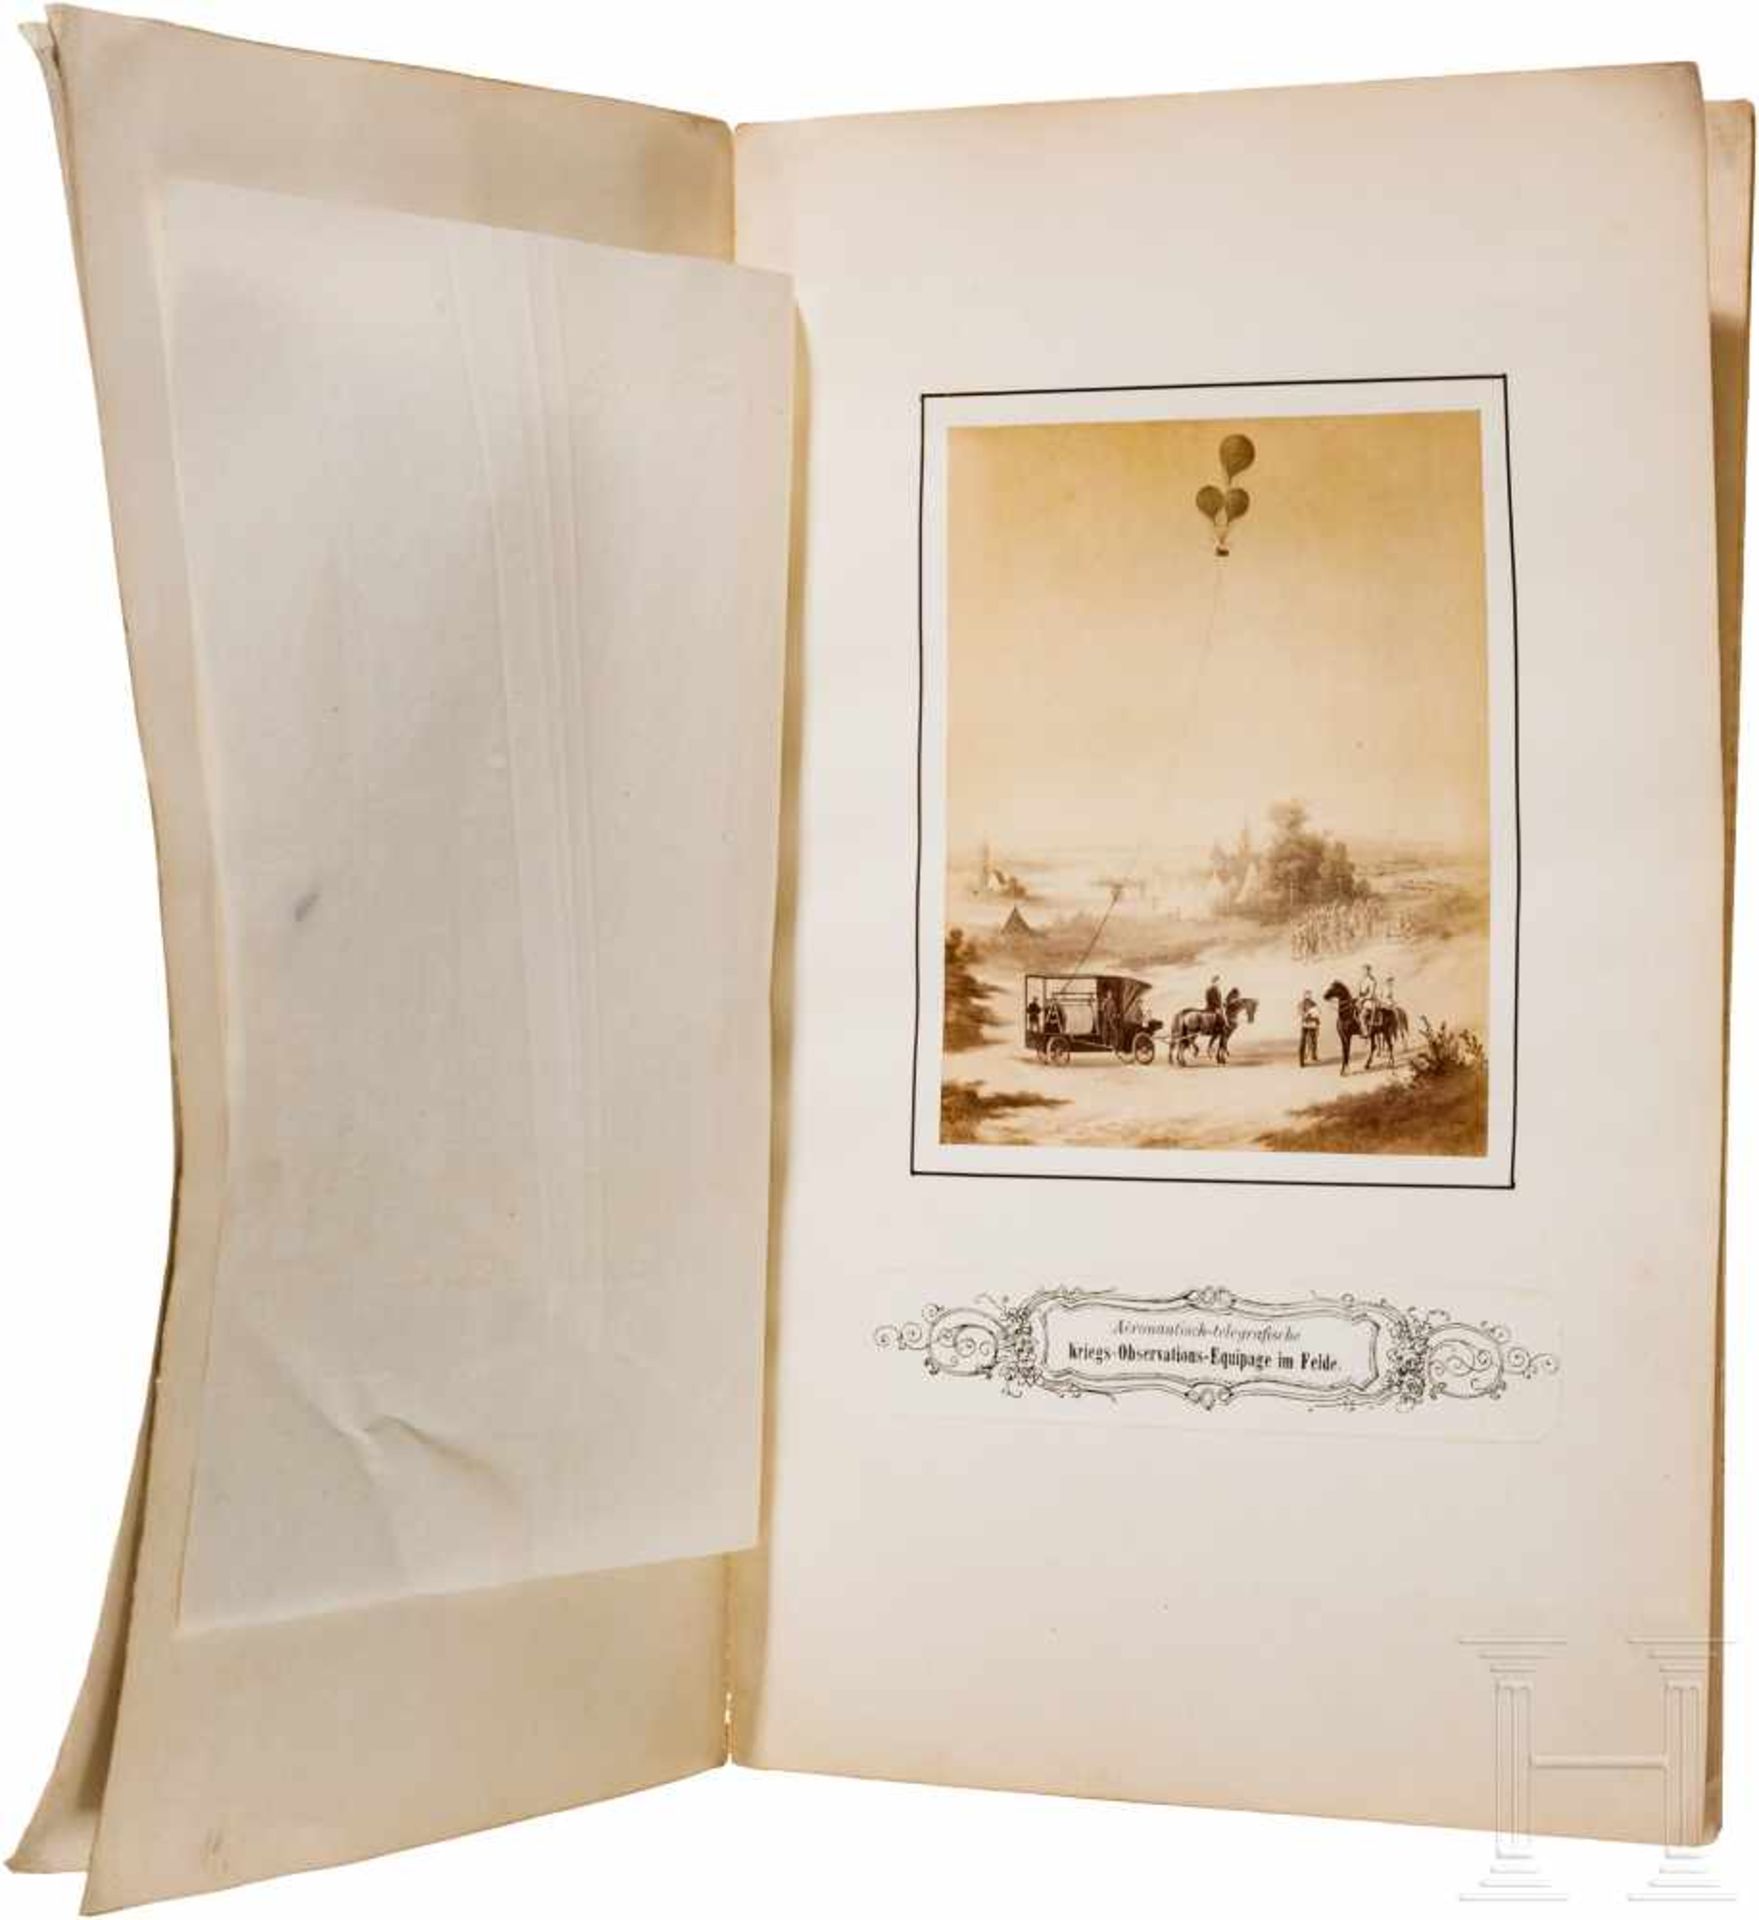 "Aeronautisch-telegrafische Kriegs-Observations-Equipage", 1867Carl Albert Mayerhofer, "Ingenieur,